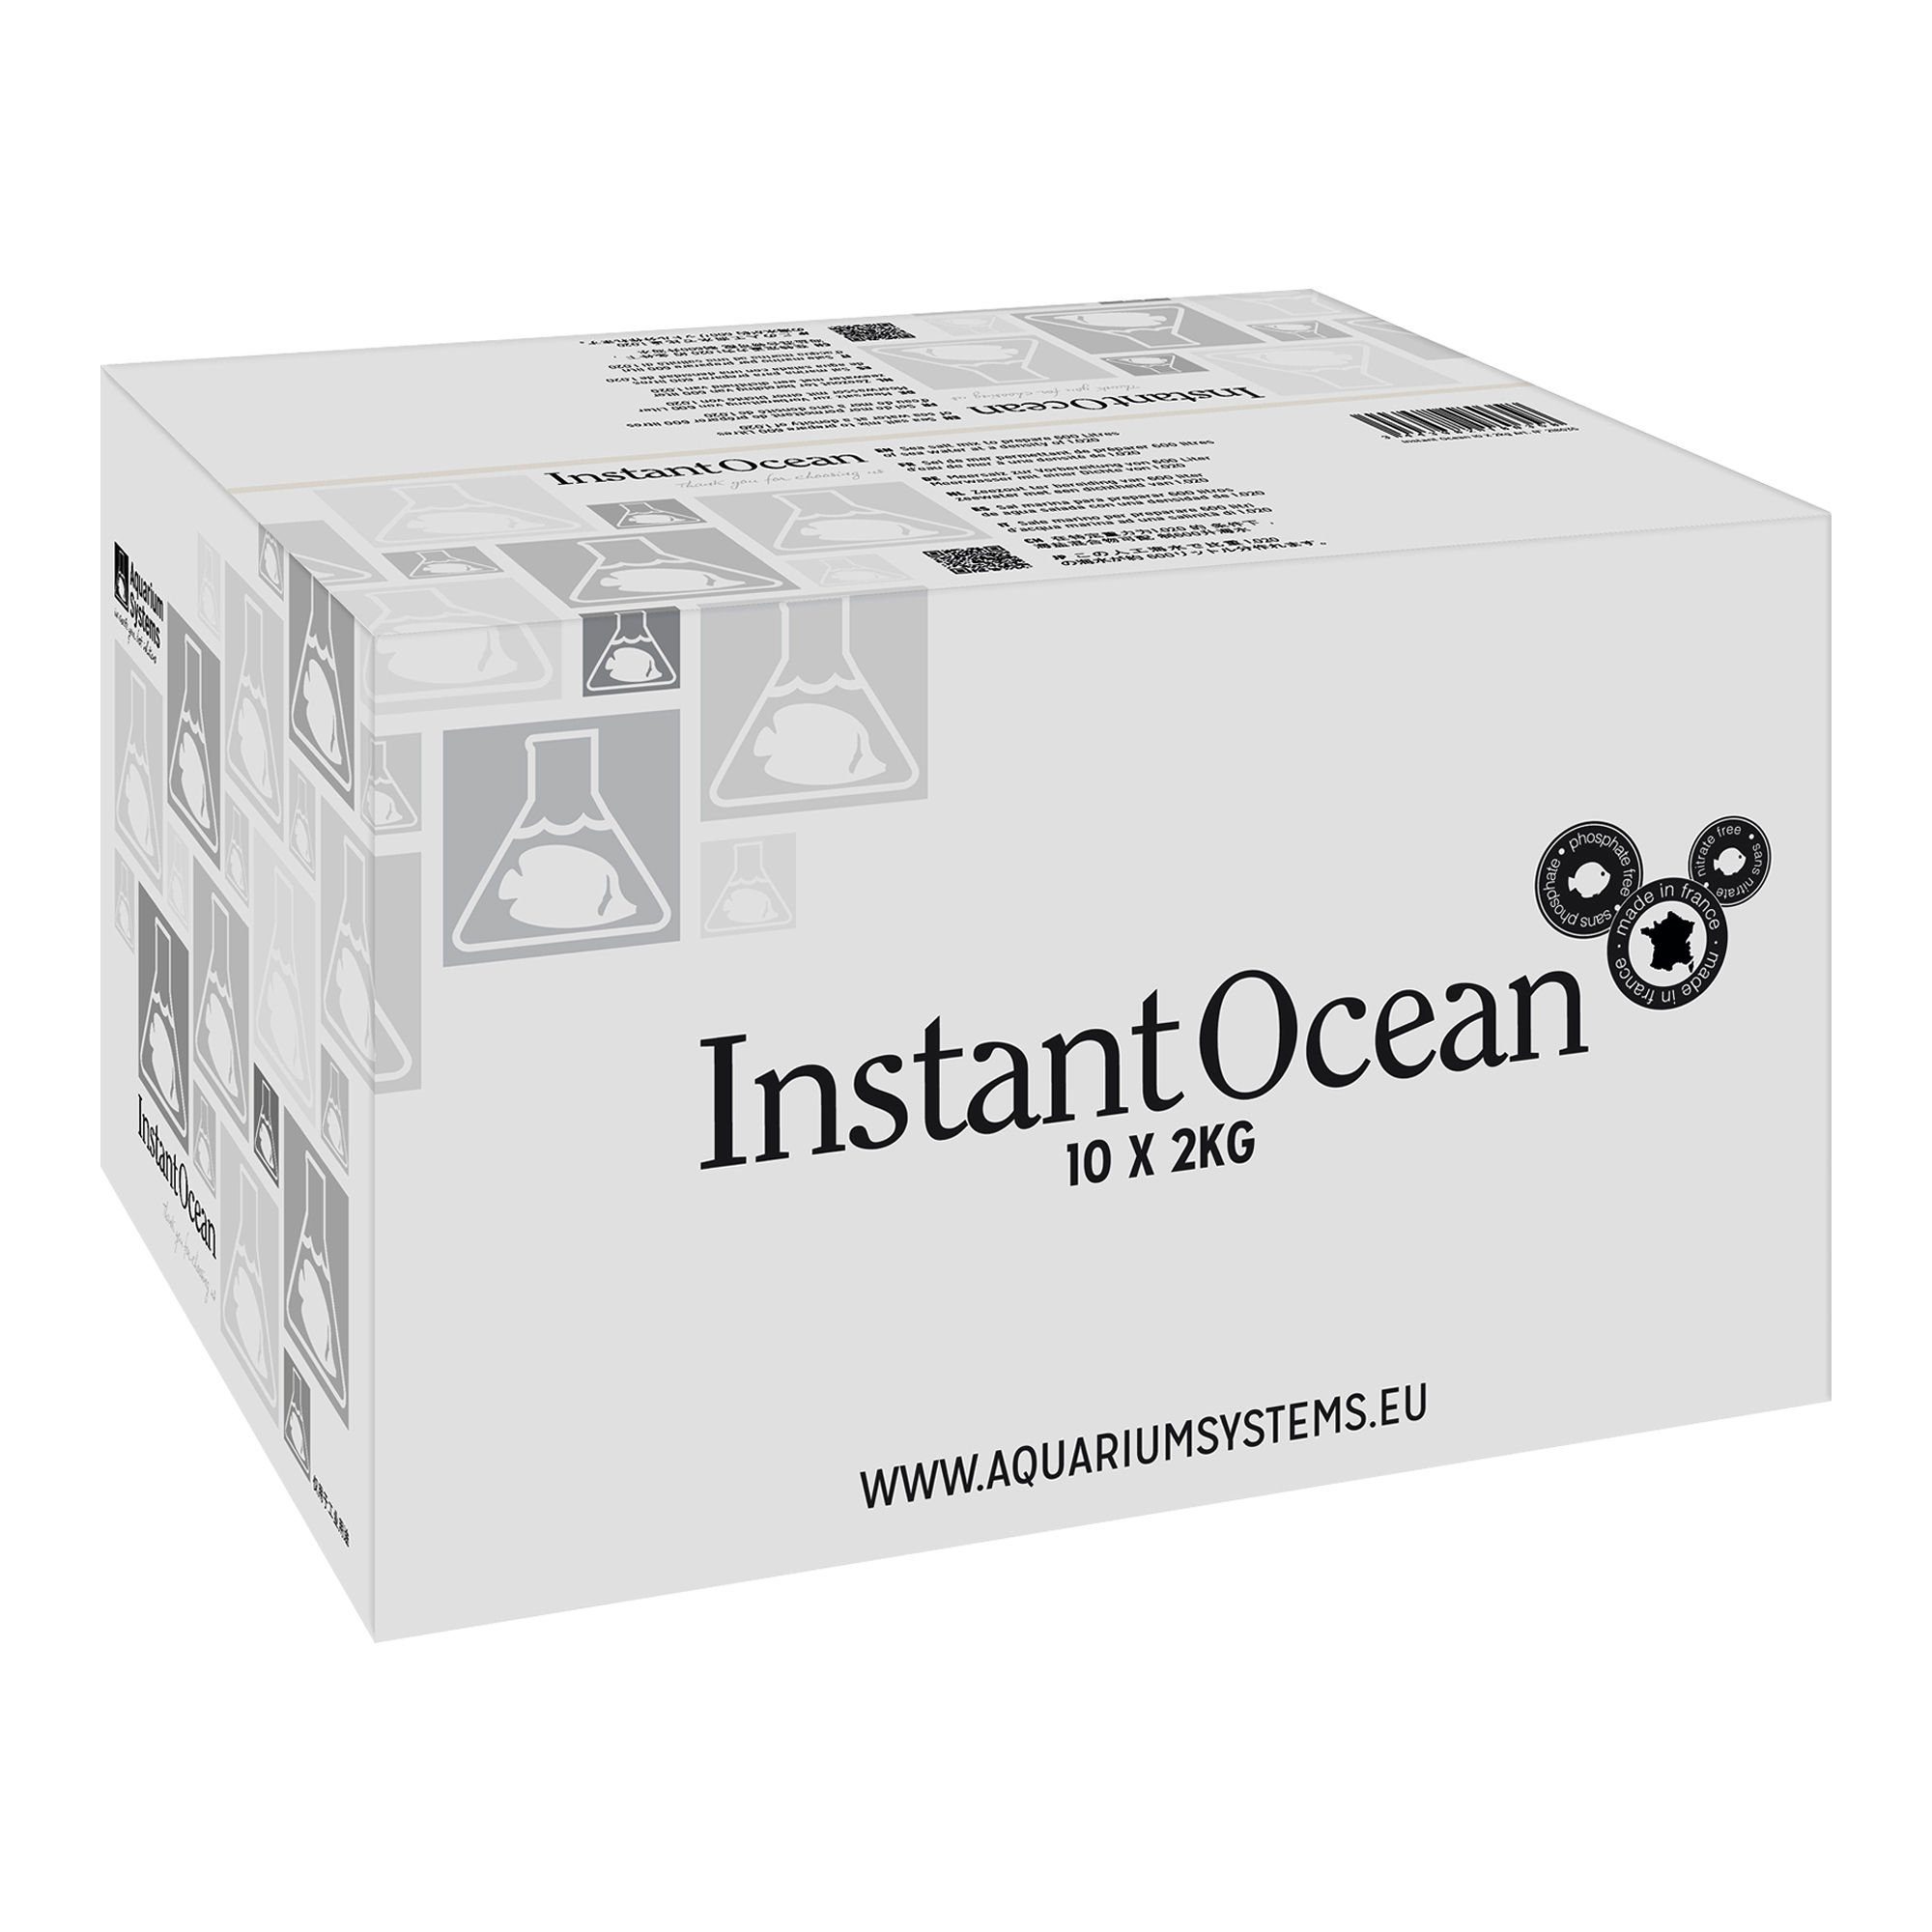 Aquarium Systems Aquariumpflege Instant Ocean Meersalz - 10x 2 kg